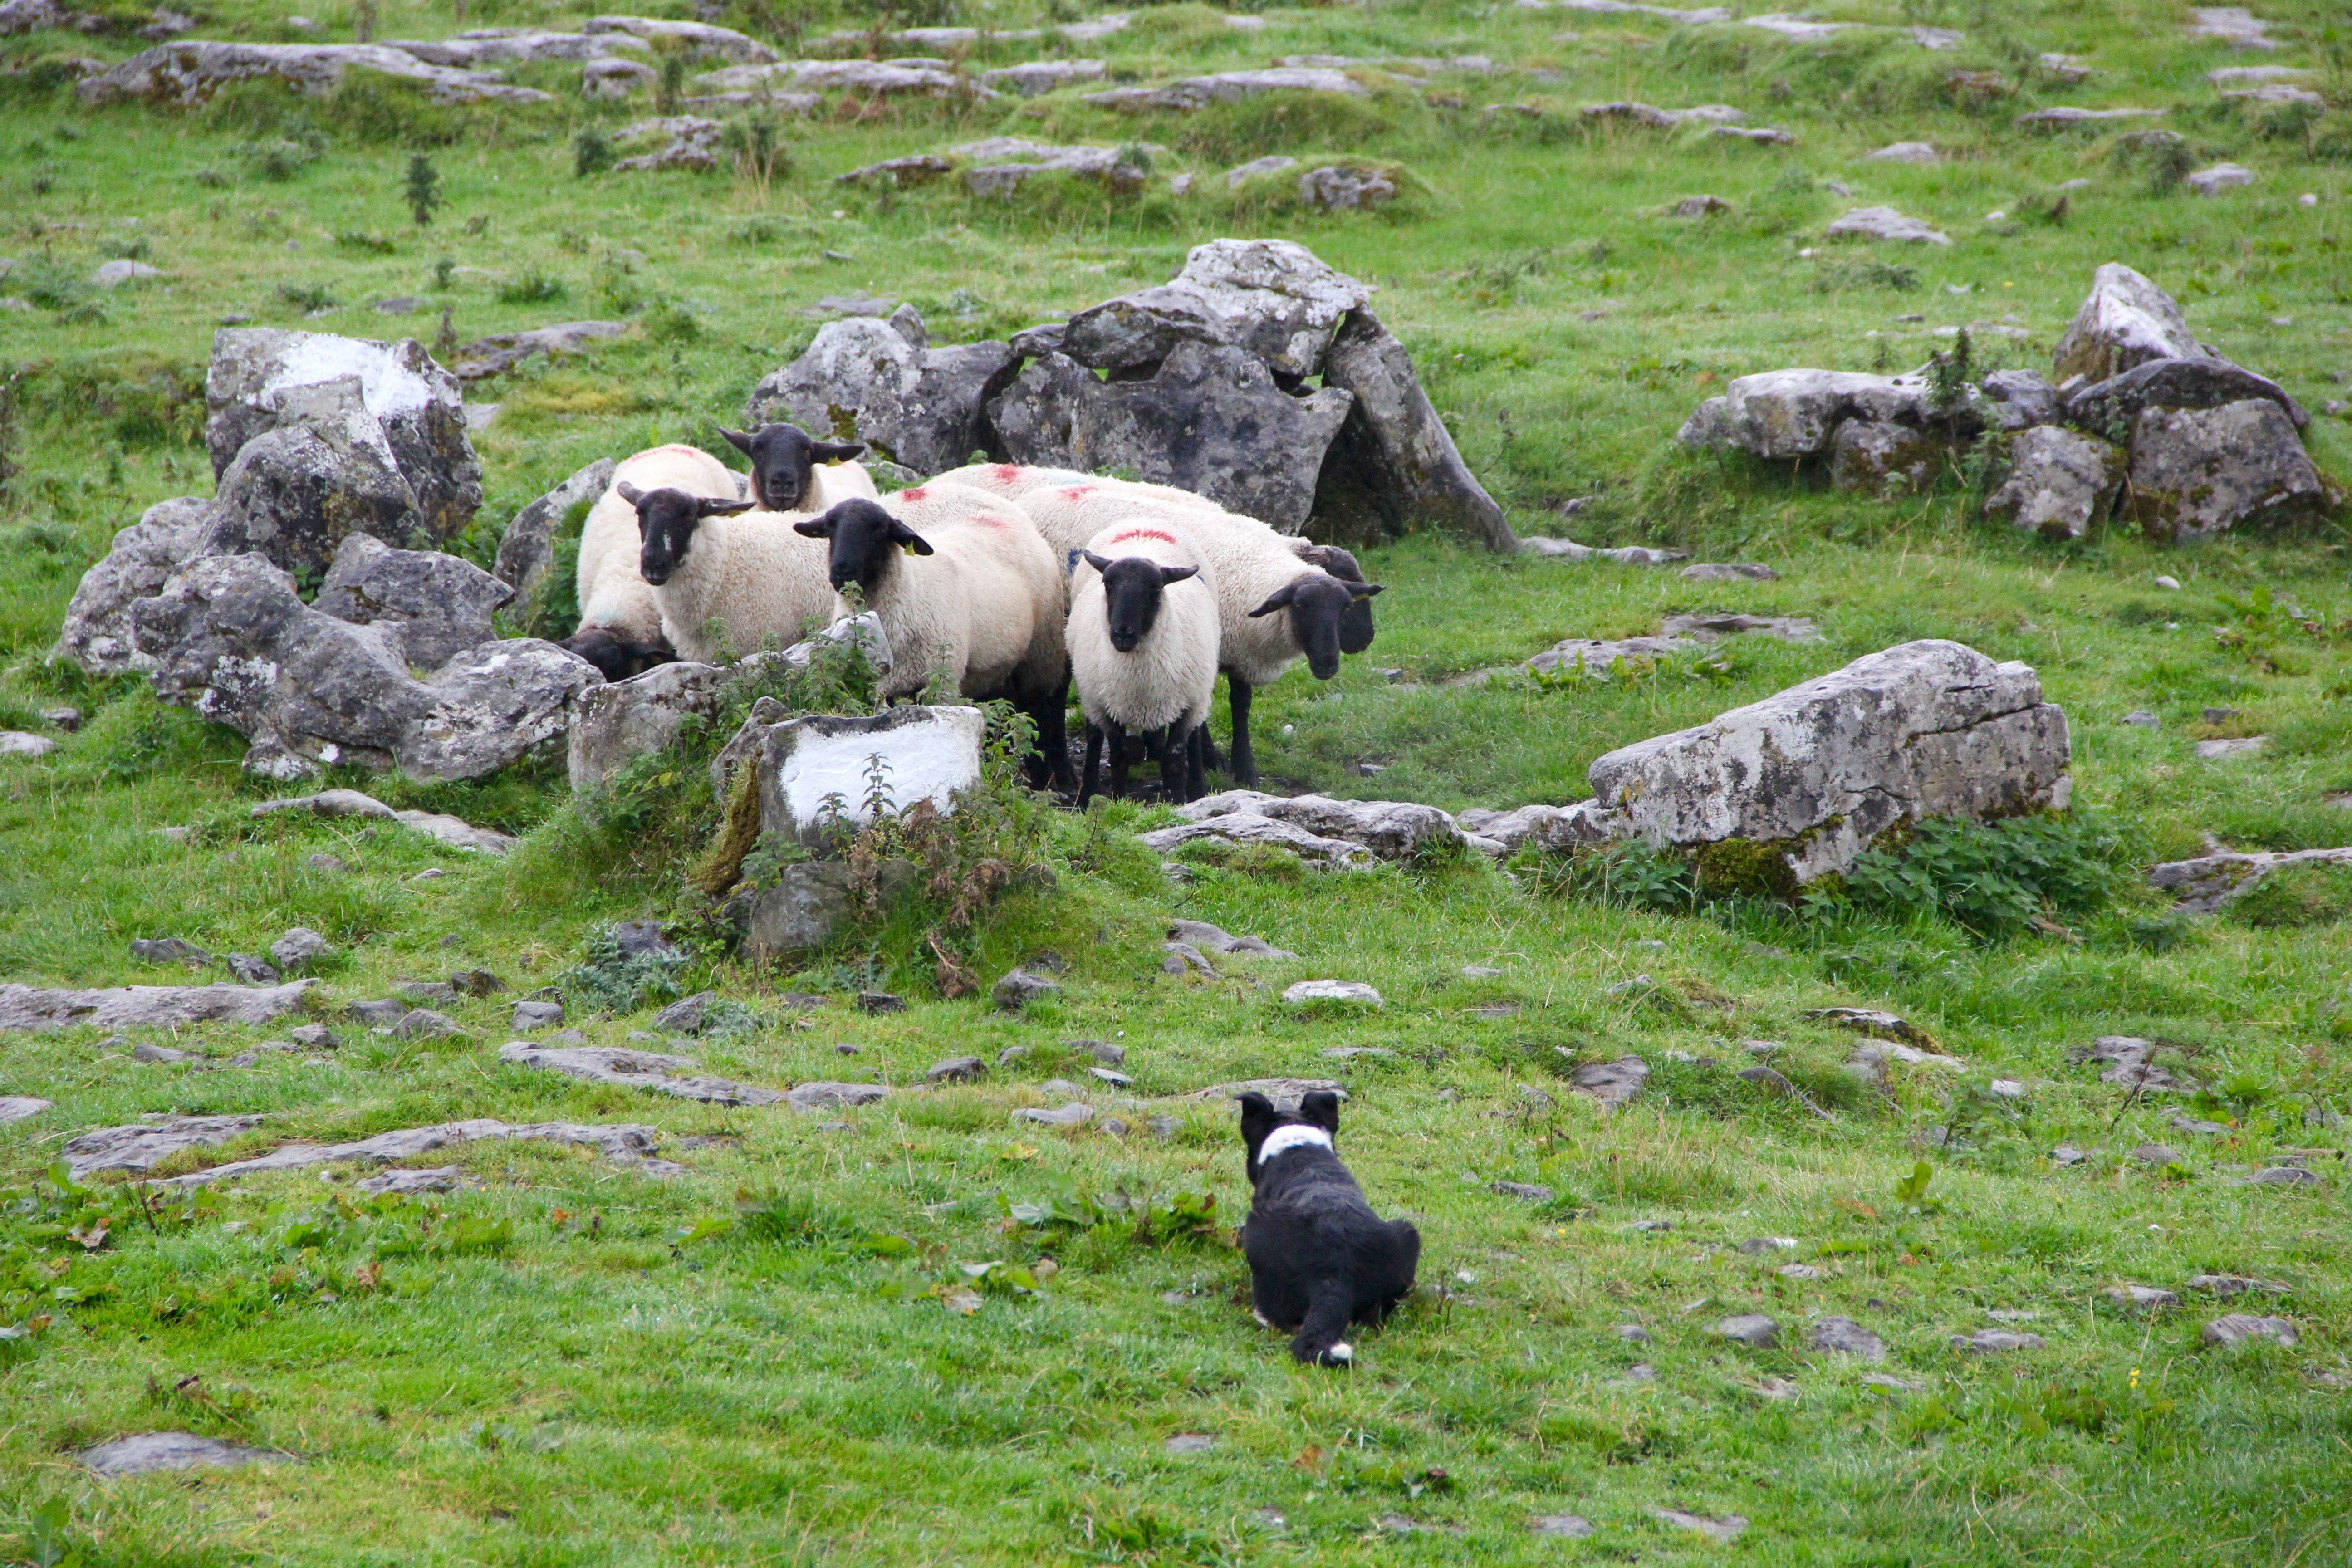 Sheep and dog on the grass among the rocks